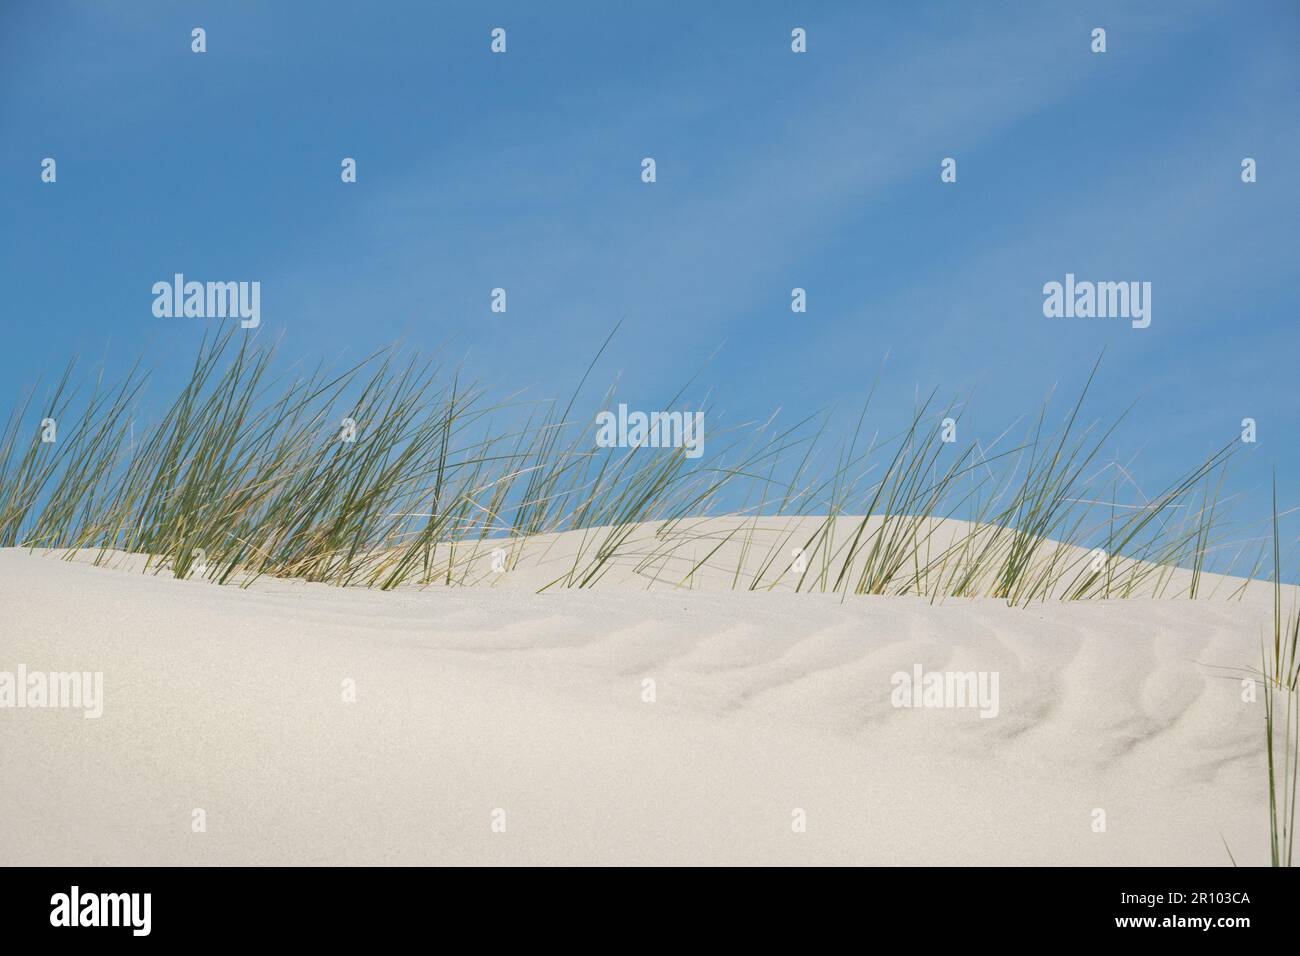 Herbe de marram enfouie par le vent sous le sable des dunes, les lames d'herbe dépassent juste au-dessus et capturent le sable dérivant. Banque D'Images